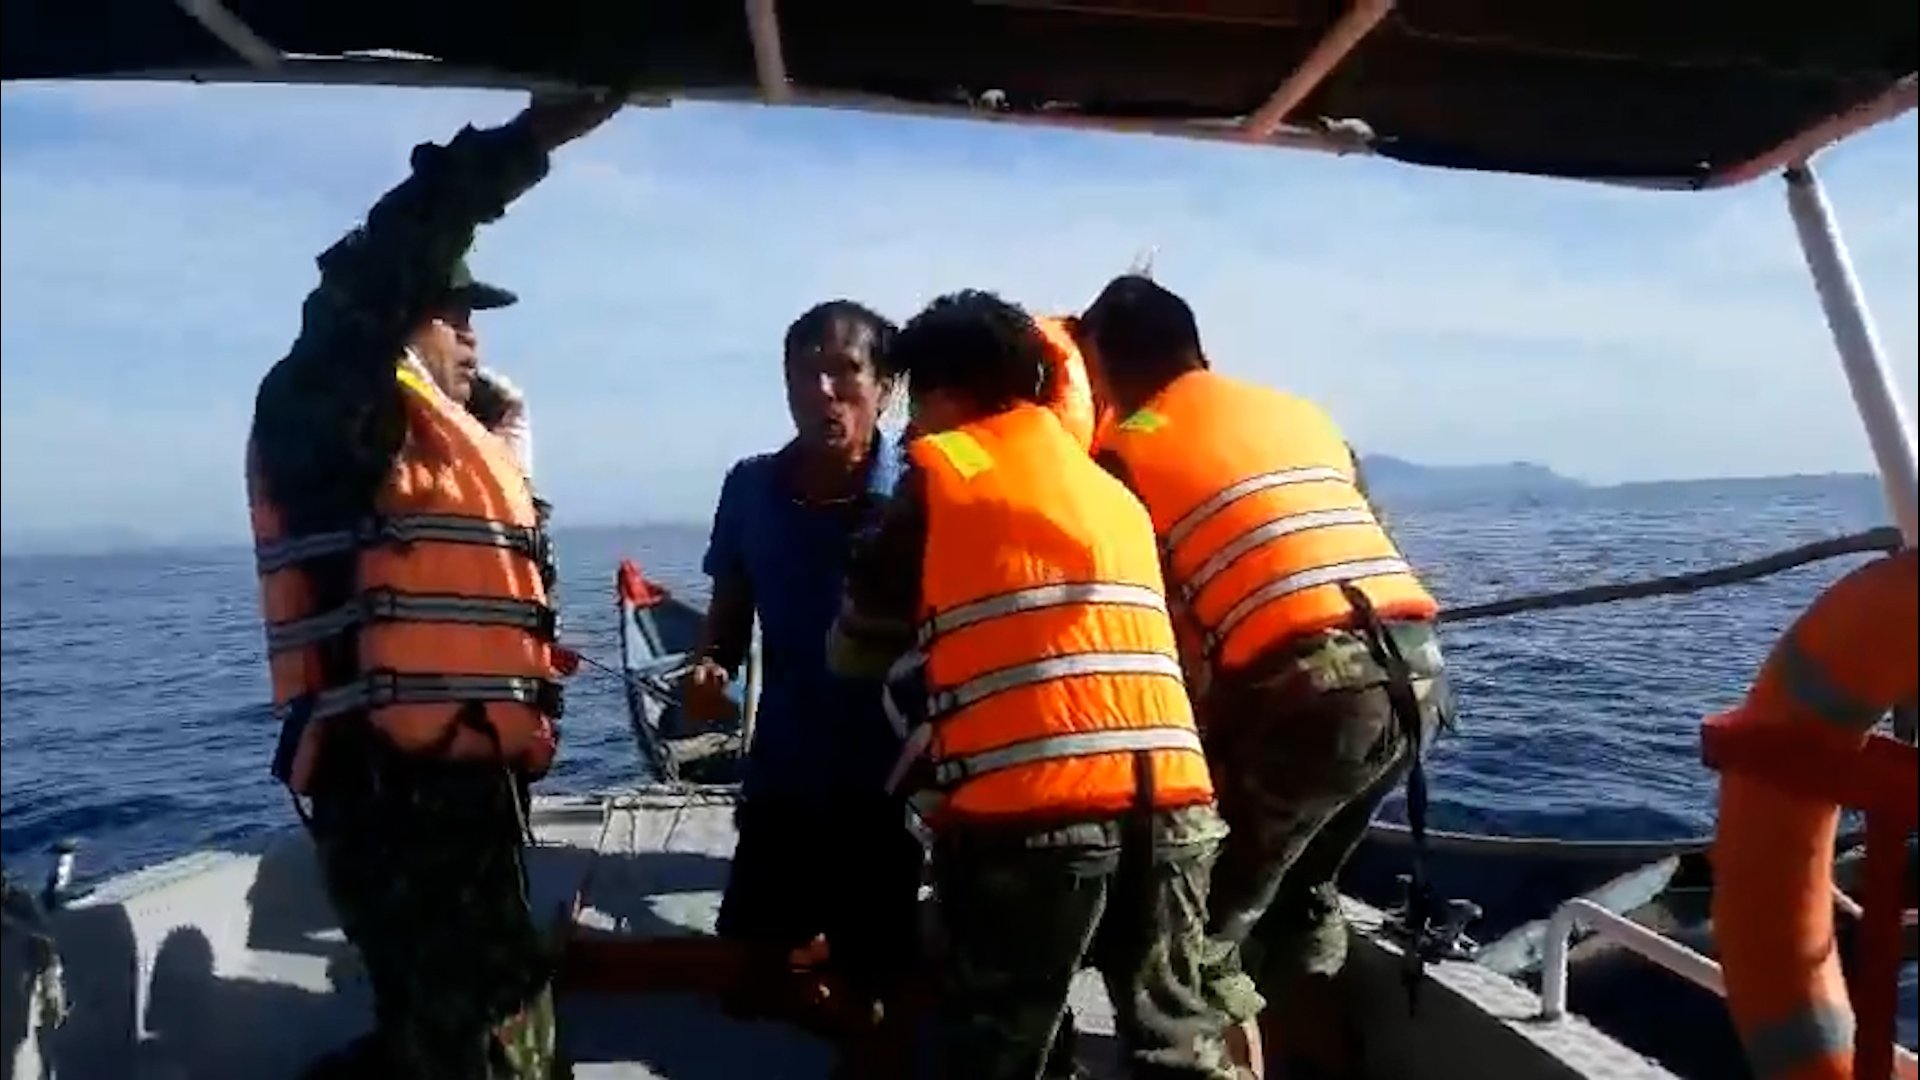 Khi đang đánh bắt hải sản trên vùng biển ở Quảng Nam, tàu cá của ông Công va chạm với một tàu khác không rõ số hiệu khiến 8 ngư dân rơi xuống biển, 2 người chết, 1 người vẫn đang mất tích